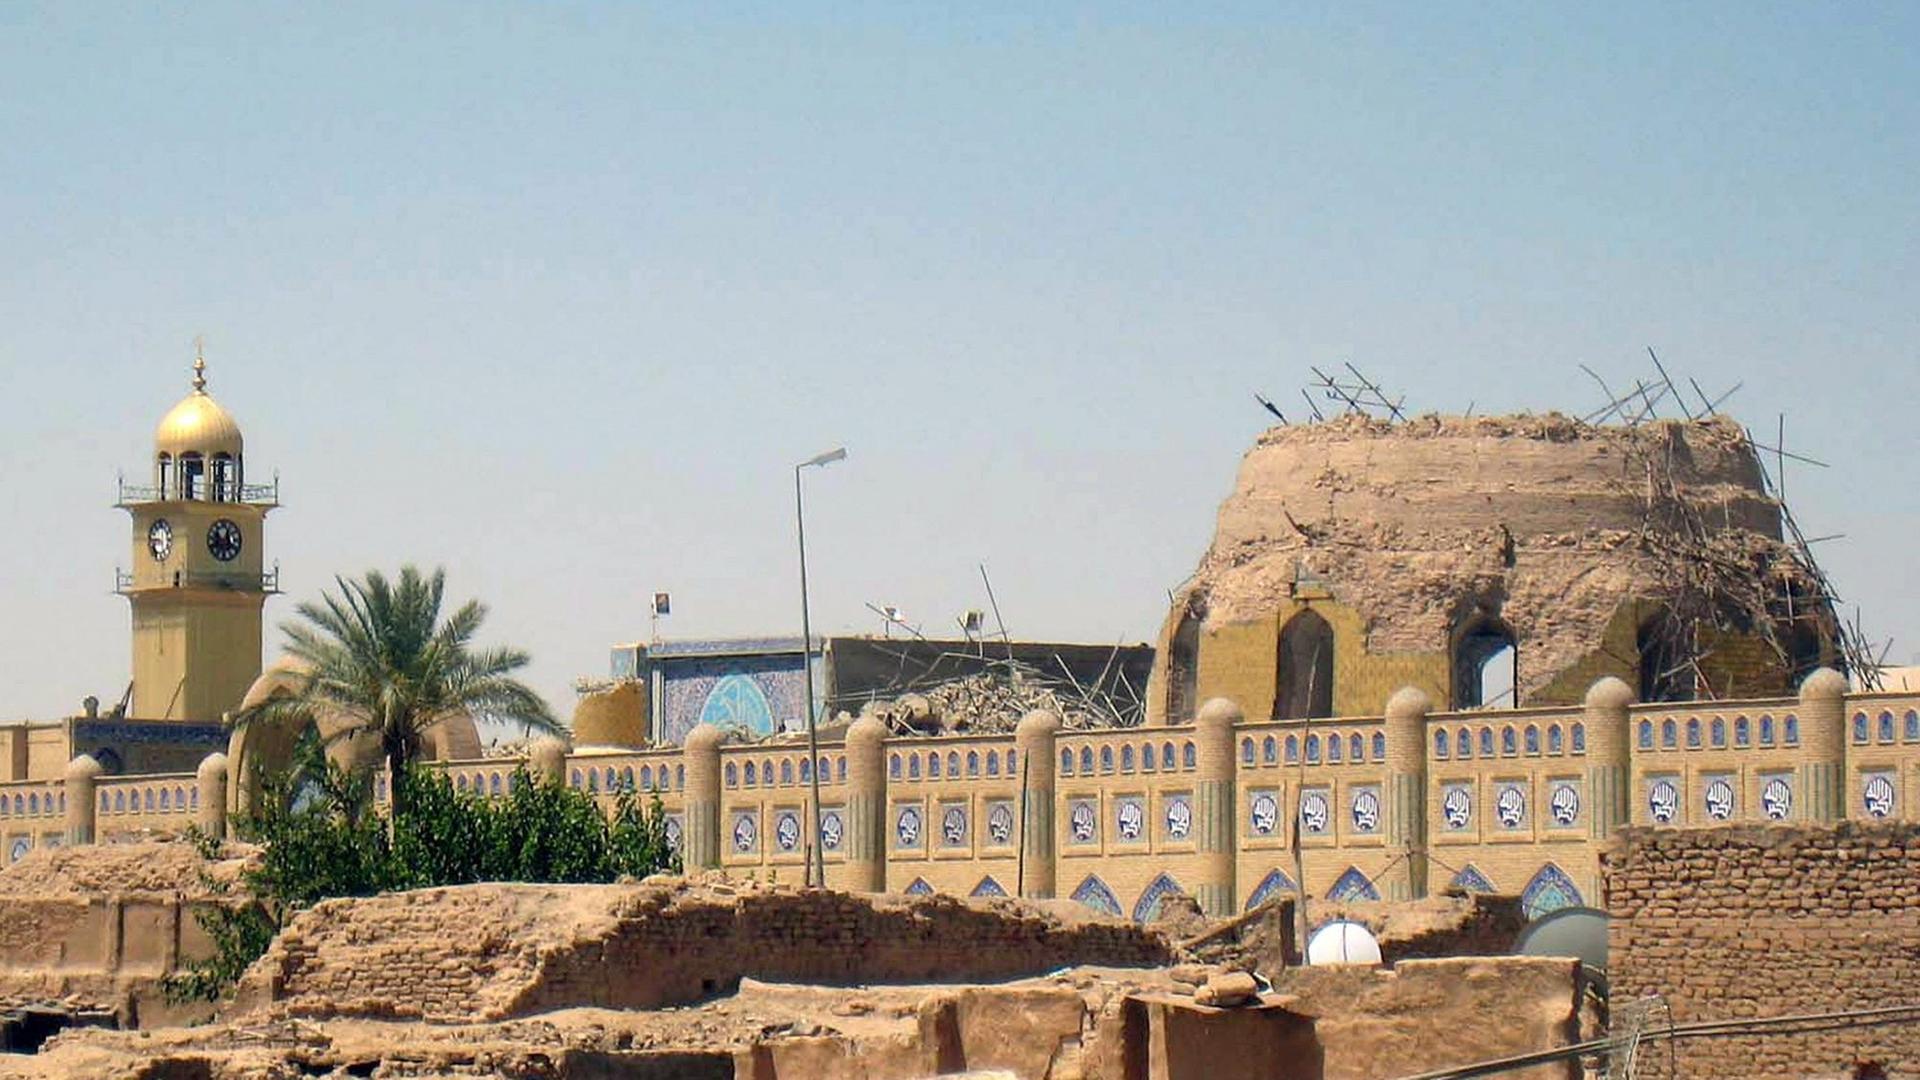 Der als "Goldene Moschee" bekannte Askari-Schrein in der nordirakischen Stadt Samarra, die bei Anschlägen schwer beschädigt wurde. Zwischenzeitlich wurde sie wieder aufgebaut.